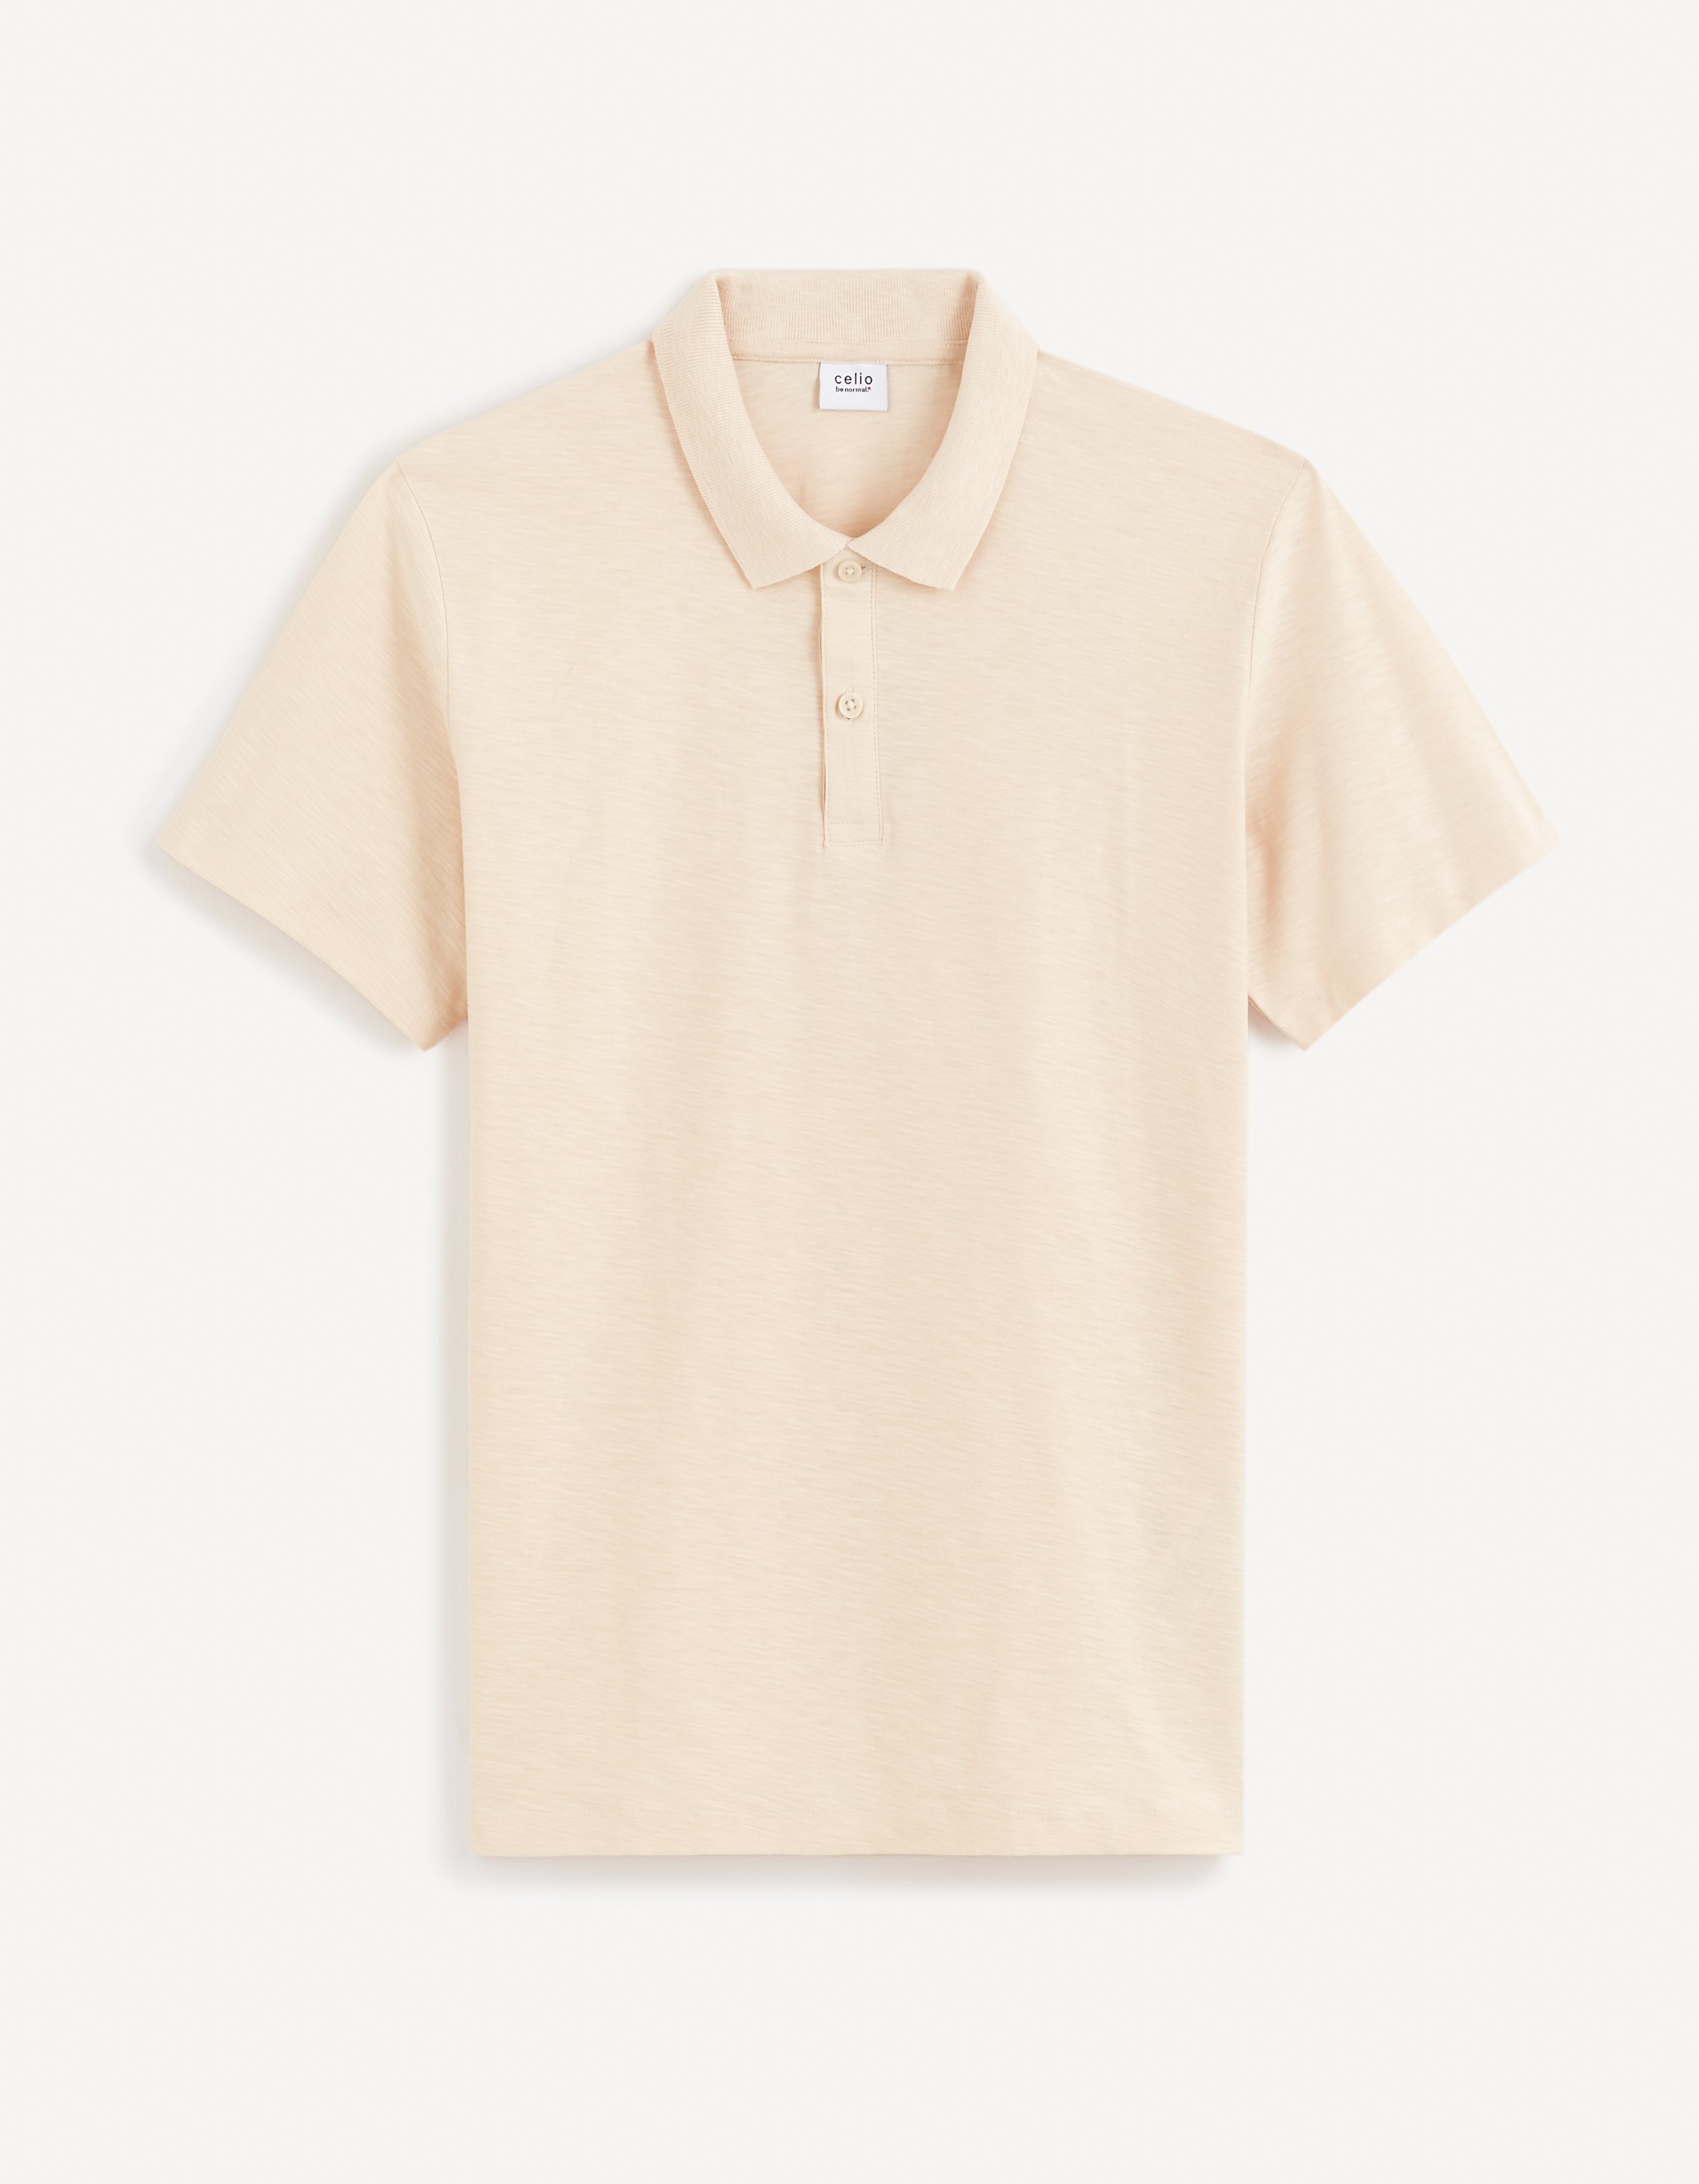 Celio Cotton Polo T-Shirt Feflame - Men